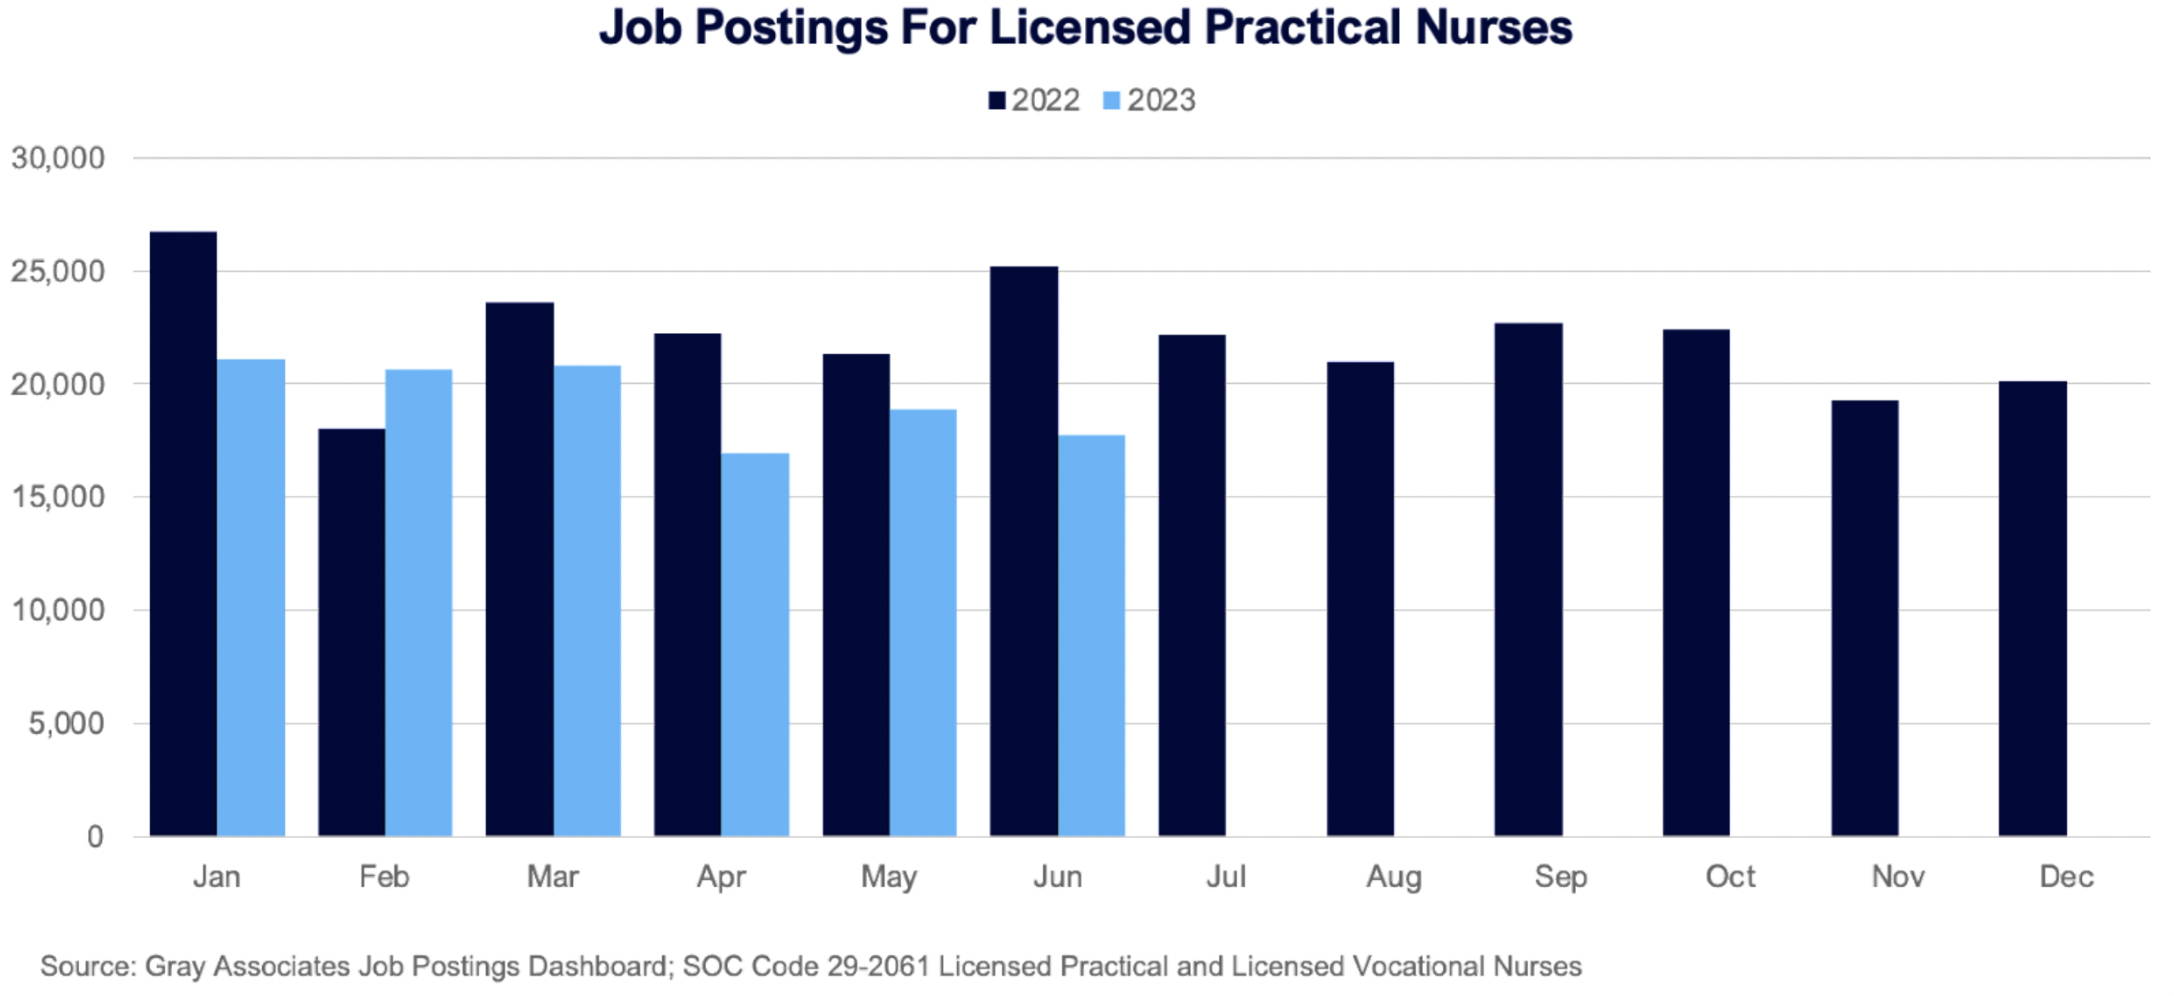 Job postings for Licensed Practical Nurses